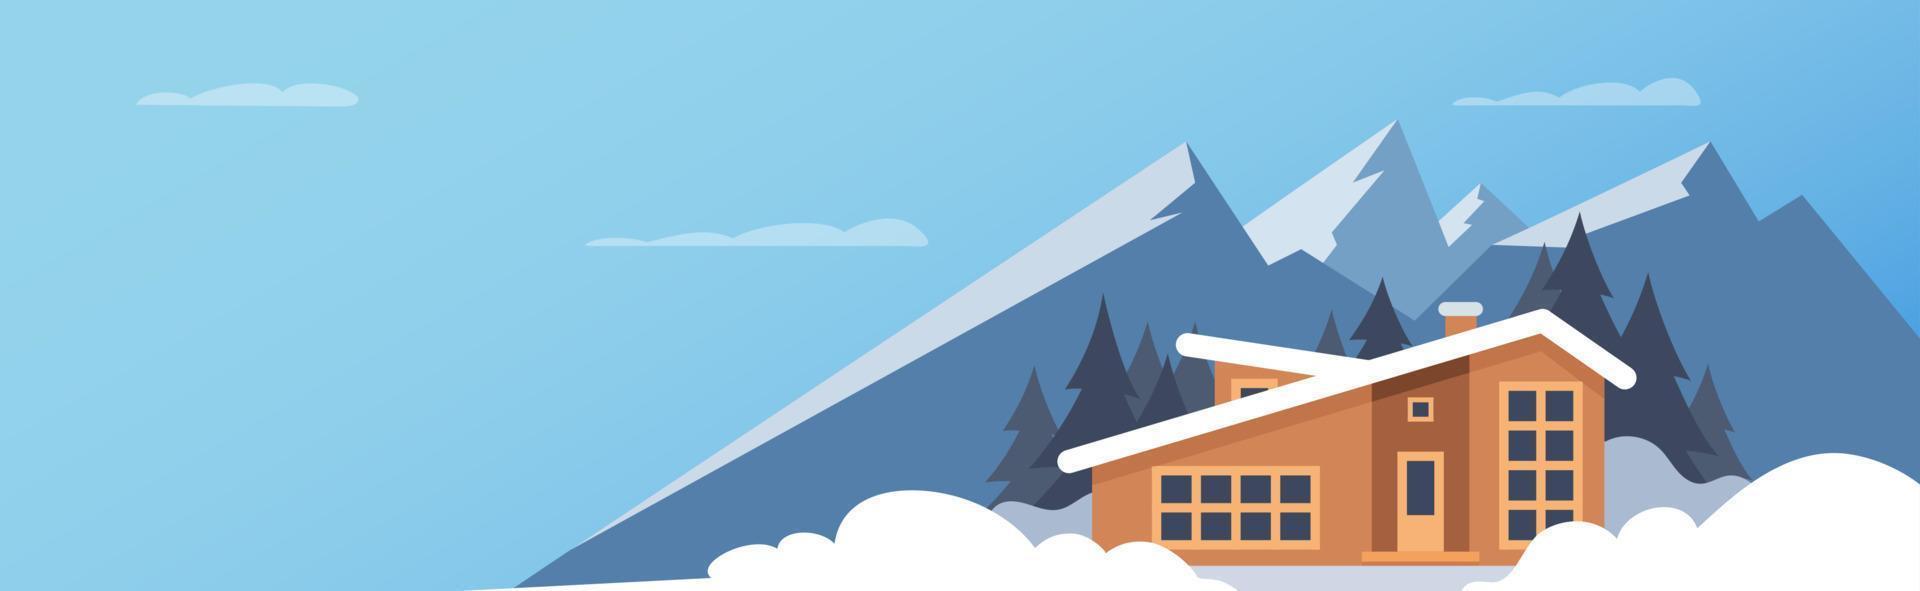 vinter- sport. vinter- berg landskap med stor hus för turister. vinter- högtider i de berg, åka skidor resorts, hus hyror. vektor platt illustration.